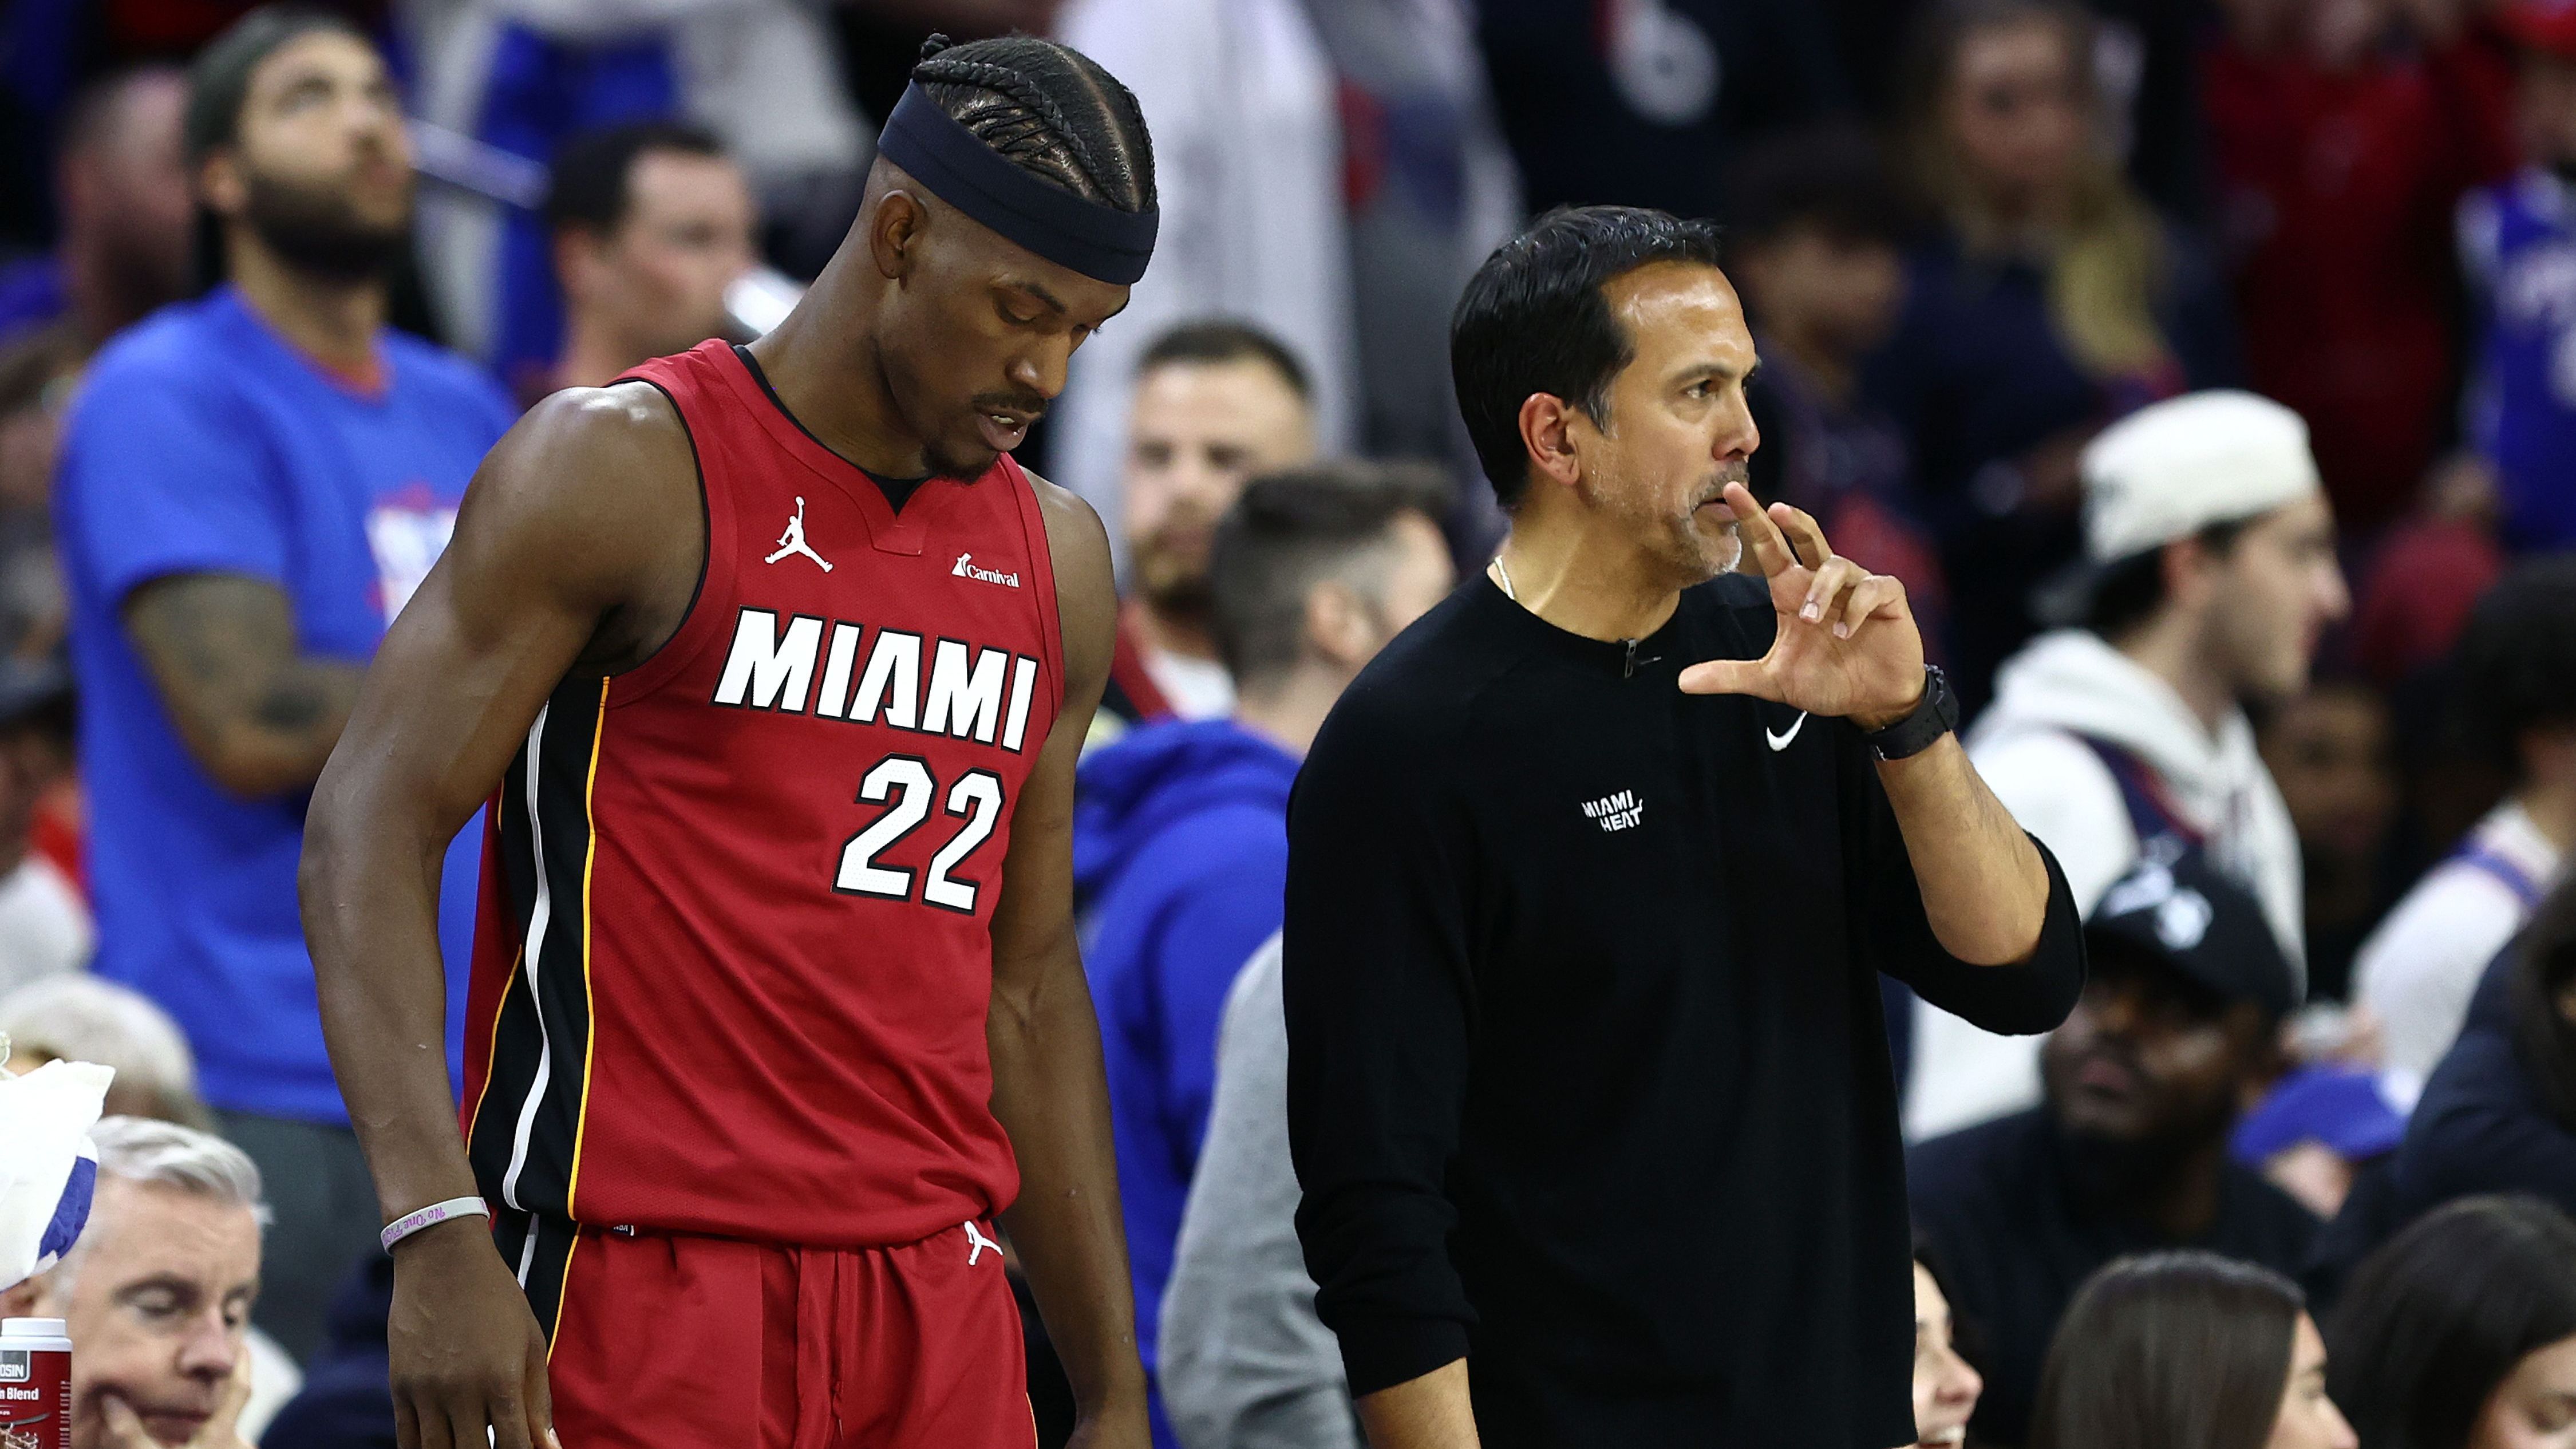 <strong>Jimmy Butler (Miami Heat)</strong><br>Die Miami Heat haben nicht nur das erste Play-In gegen die Philadelphia 76ers verloren, sondern auch Jimmy Butler. "Playoff-Jimmy" zog sich eine Außenbandverletzung zu, mit der er rund vier bis sechs Wochen fehlen soll. Wahrscheinlich ist die Saison für ihn also beendet, sollte es Miami nicht wider Erwarten in die Finals schaffen.